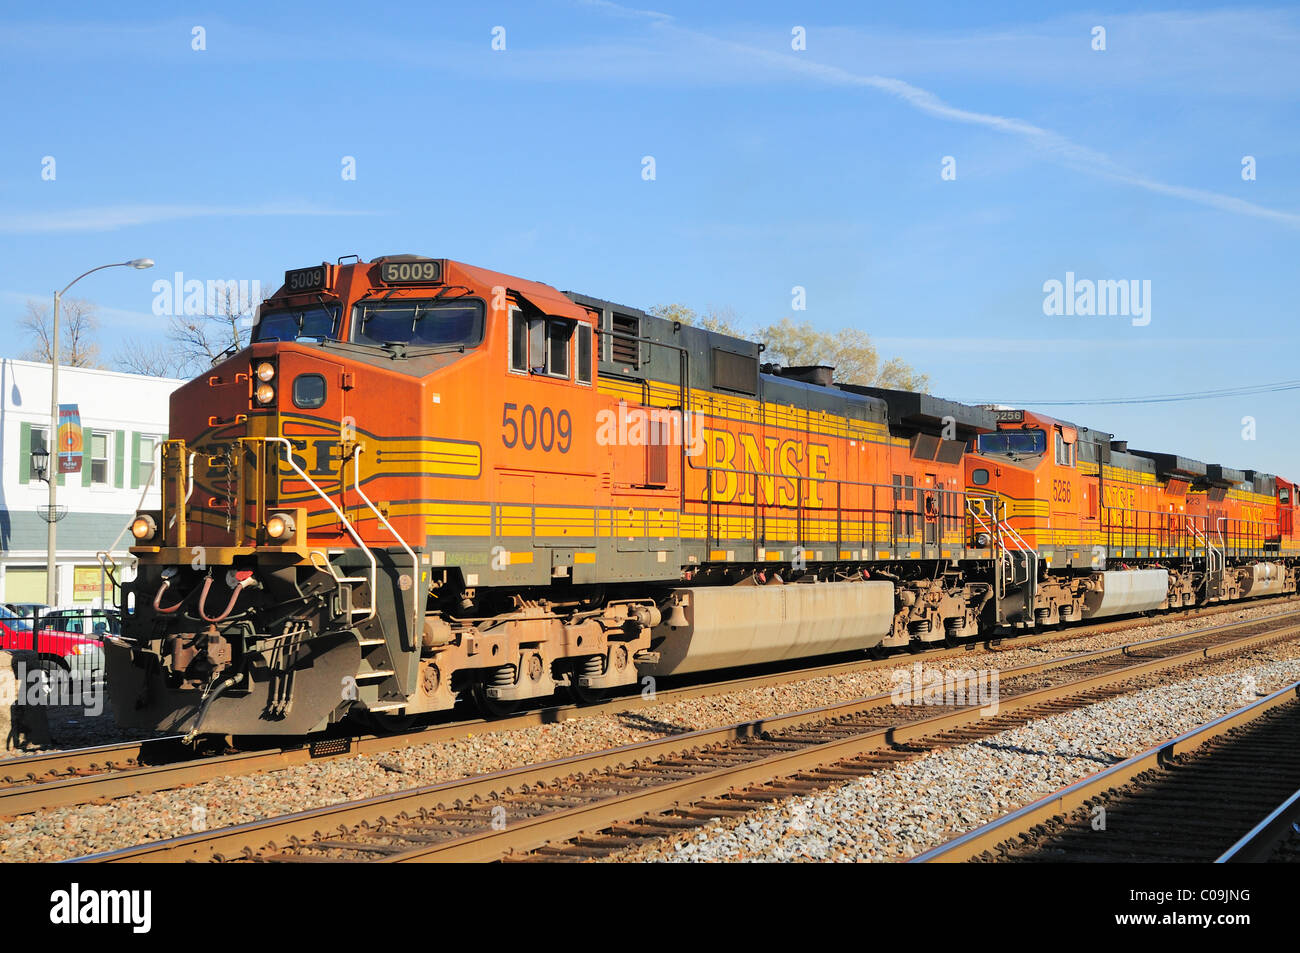 La Burlington Northern Santa Fe # 5009 menant un train de marchandises vers l'ouest de la région de Chicago. Berwyn, Illinois. Banque D'Images